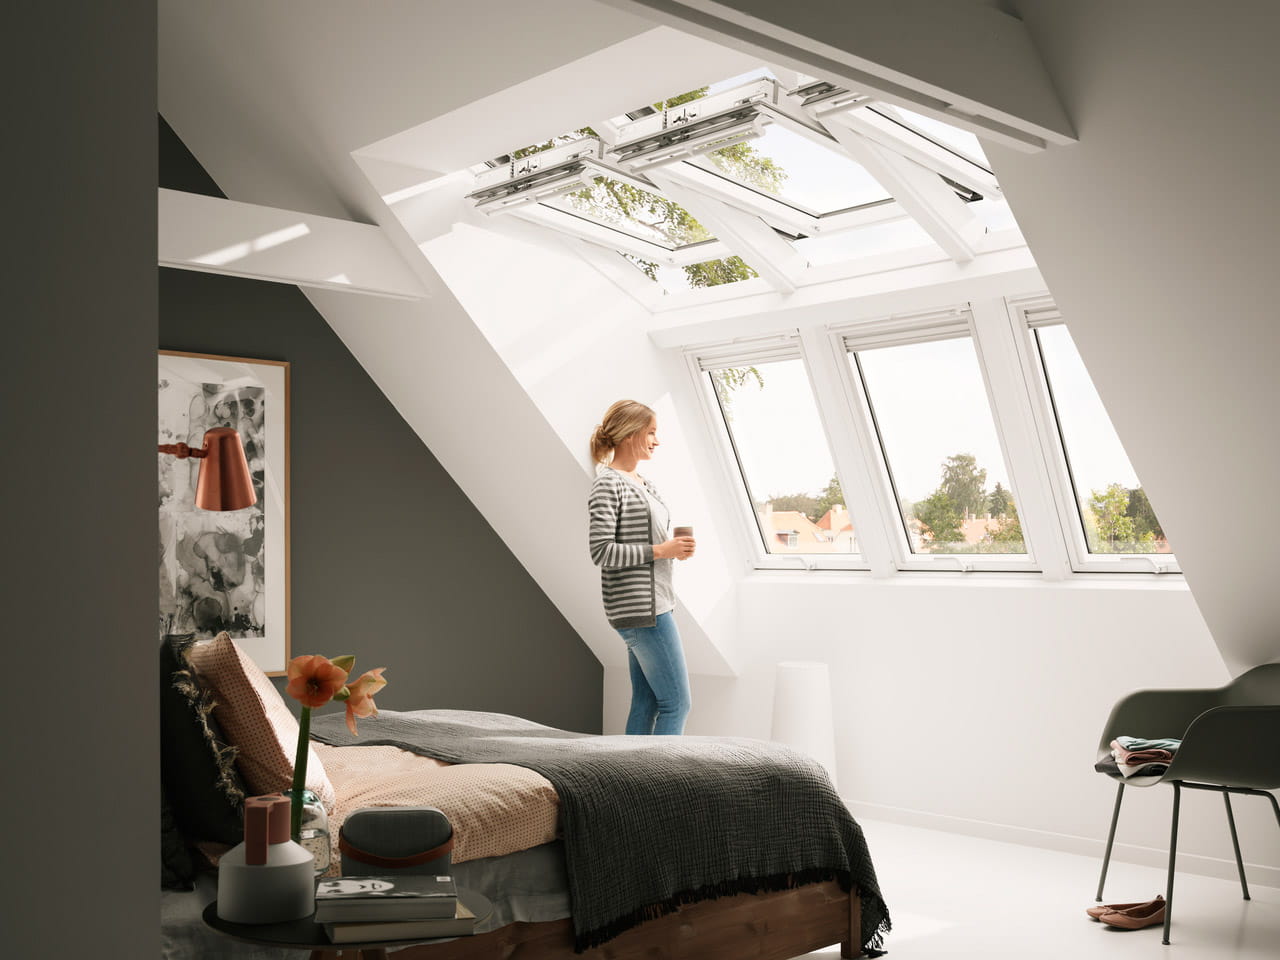 Modernes Schlafzimmer im Dachboden mit VELUX Dachflächenfenster und zeitgenössischer Einrichtung.